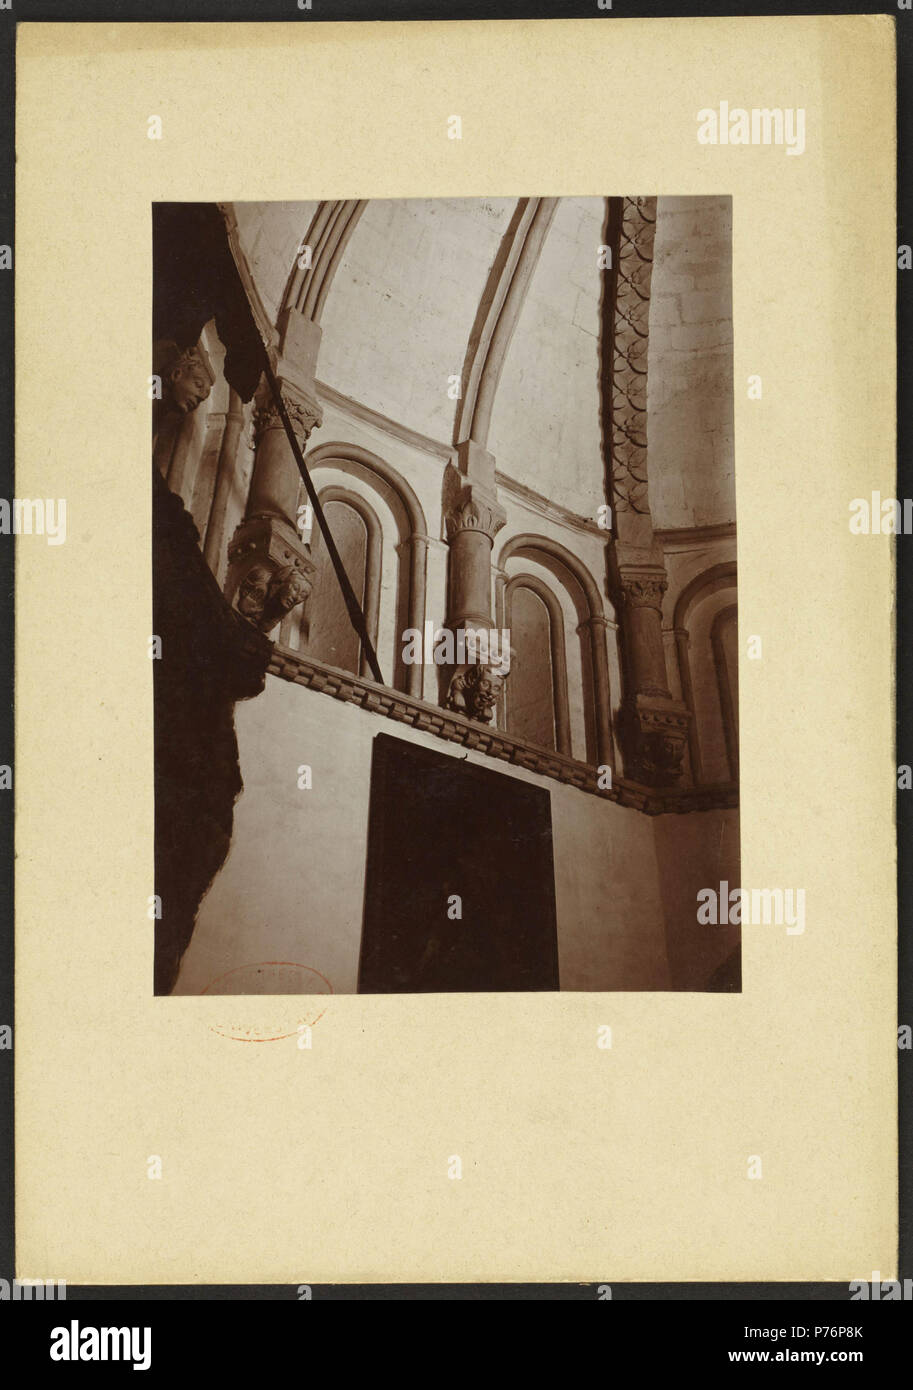 225 Vieille cathédrale de Salamanque - J-A Brutails - Université Bordeaux Montaigne - 1496 Stock Photo